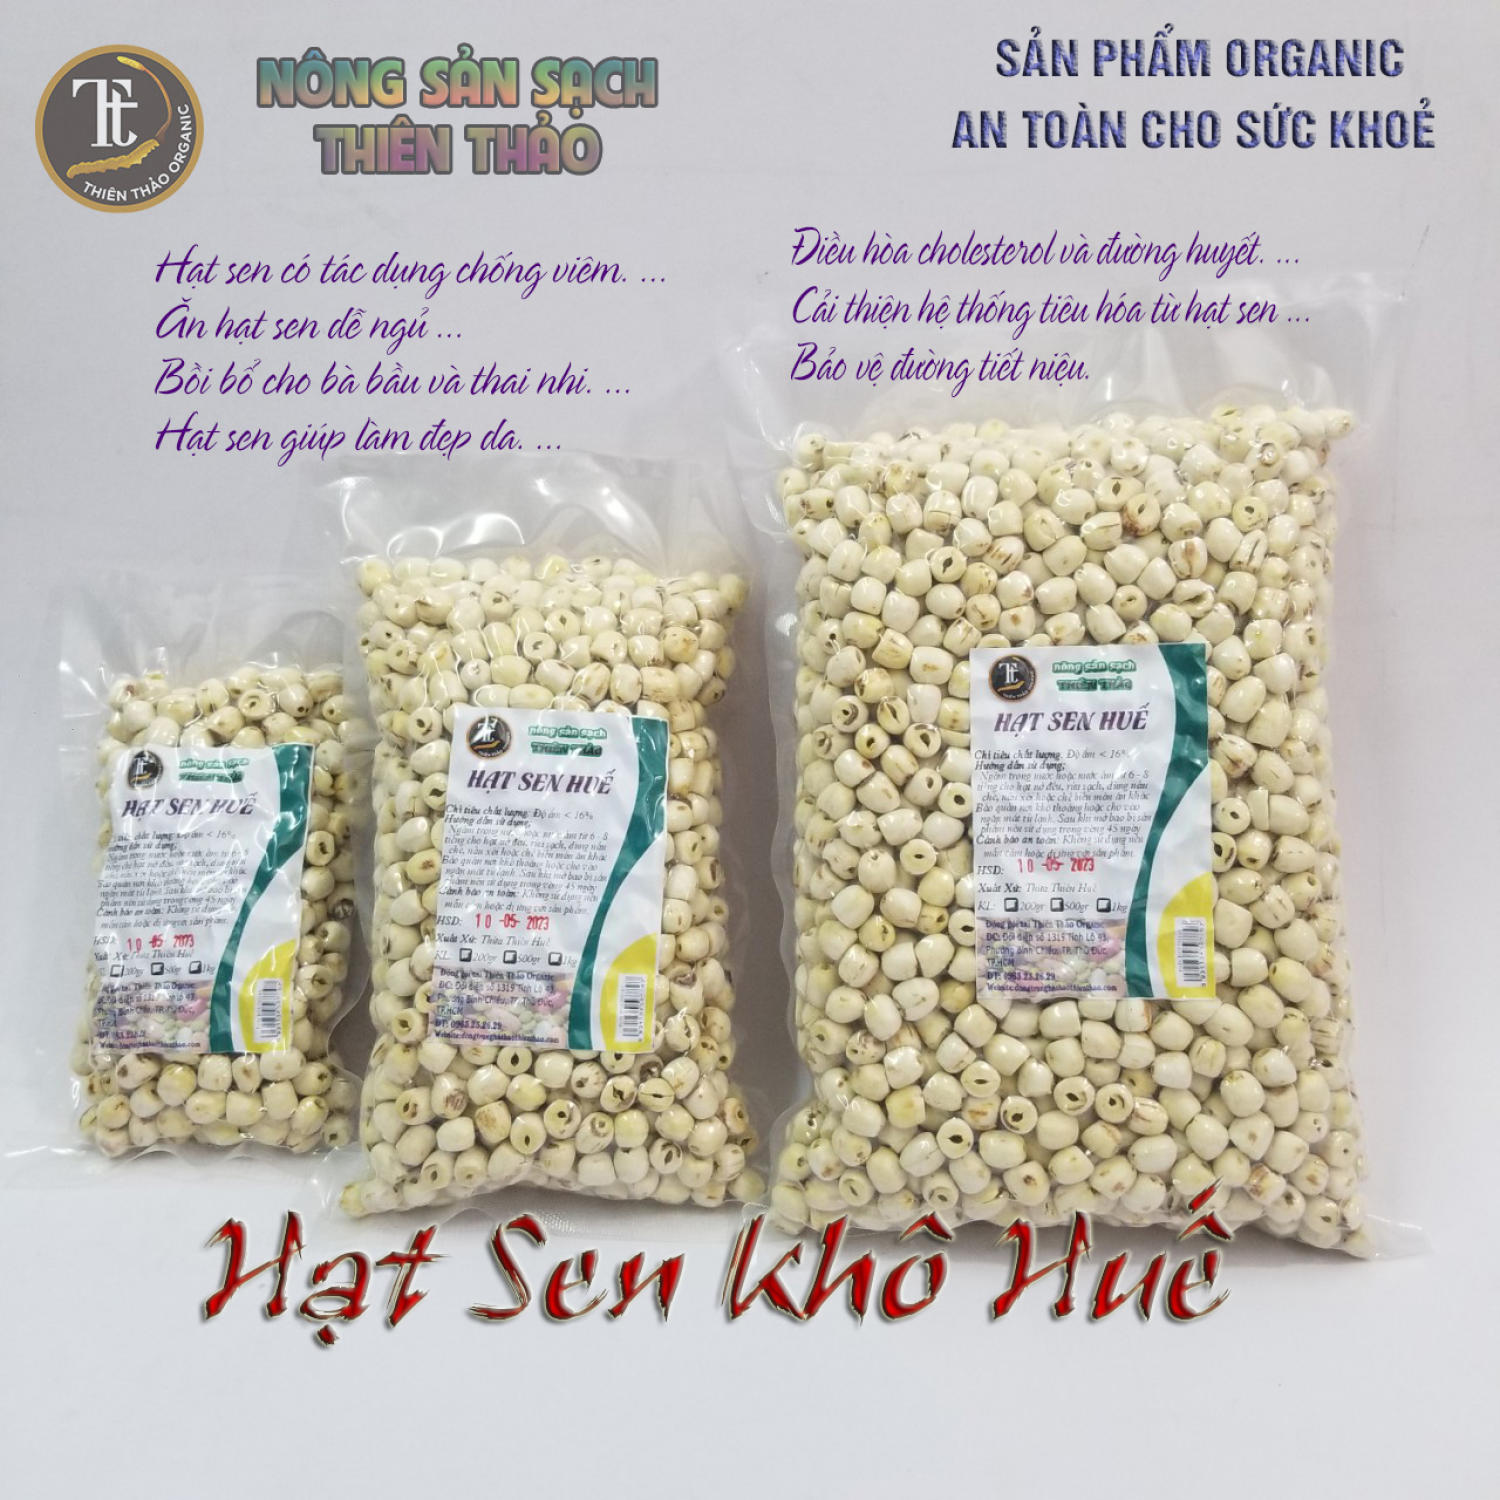 1kg hạt sen khô Huế lᴏại 1 Thiên Thảo Organic